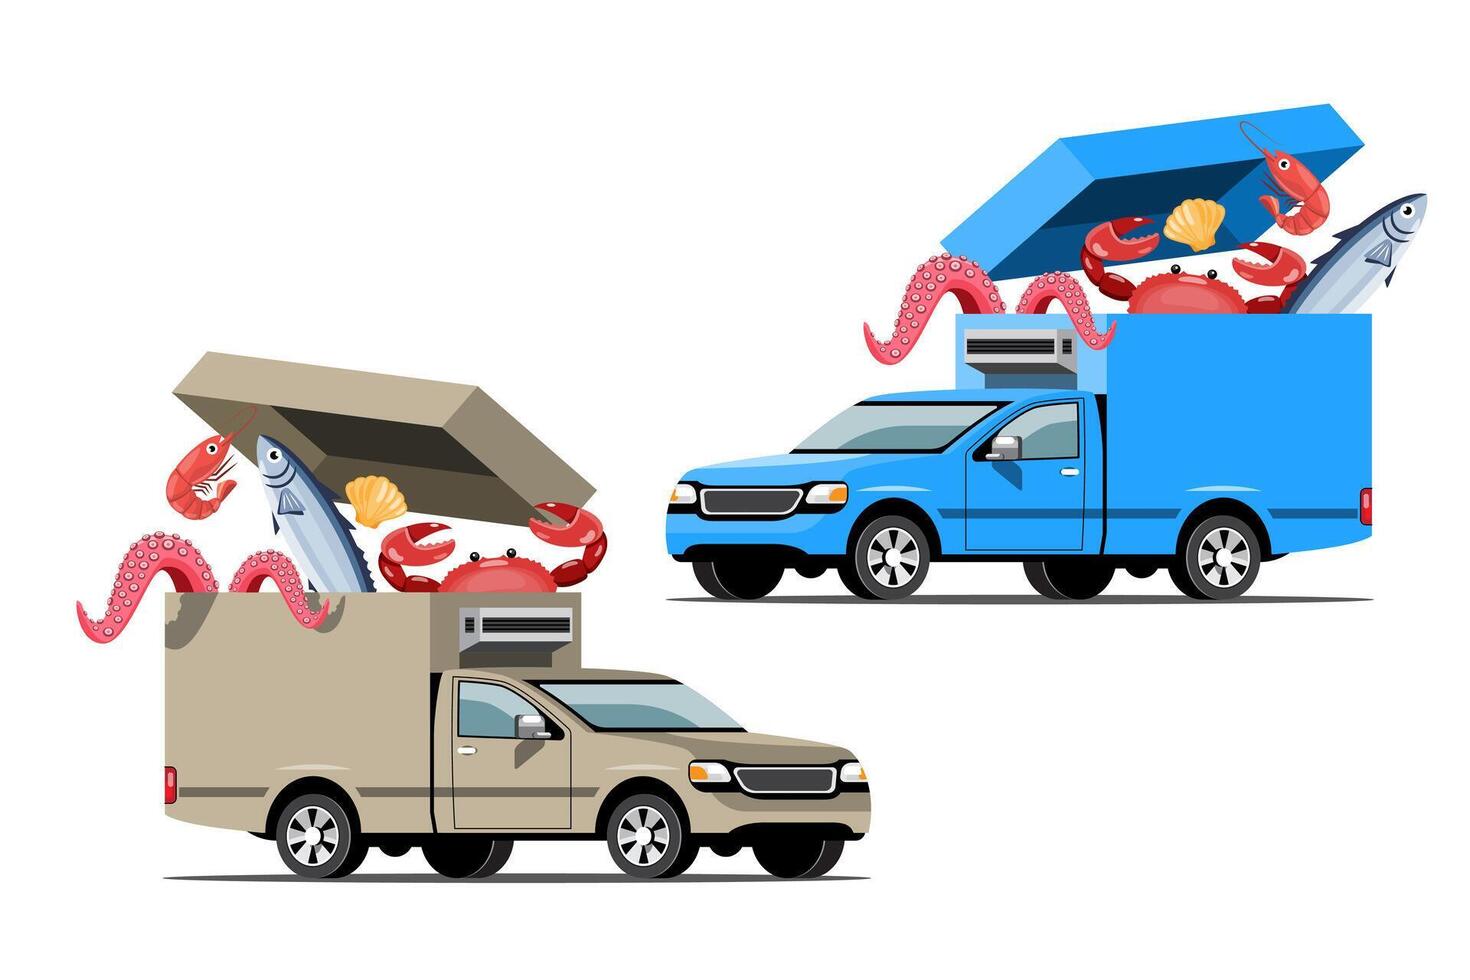 grandi icone colorate vettoriali di veicoli isolati, illustrazioni piatte di consegna in furgone tramite posizione di tracciamento gps. veicolo di consegna, consegna di pesce e cibo, consegna immediata, consegna online.